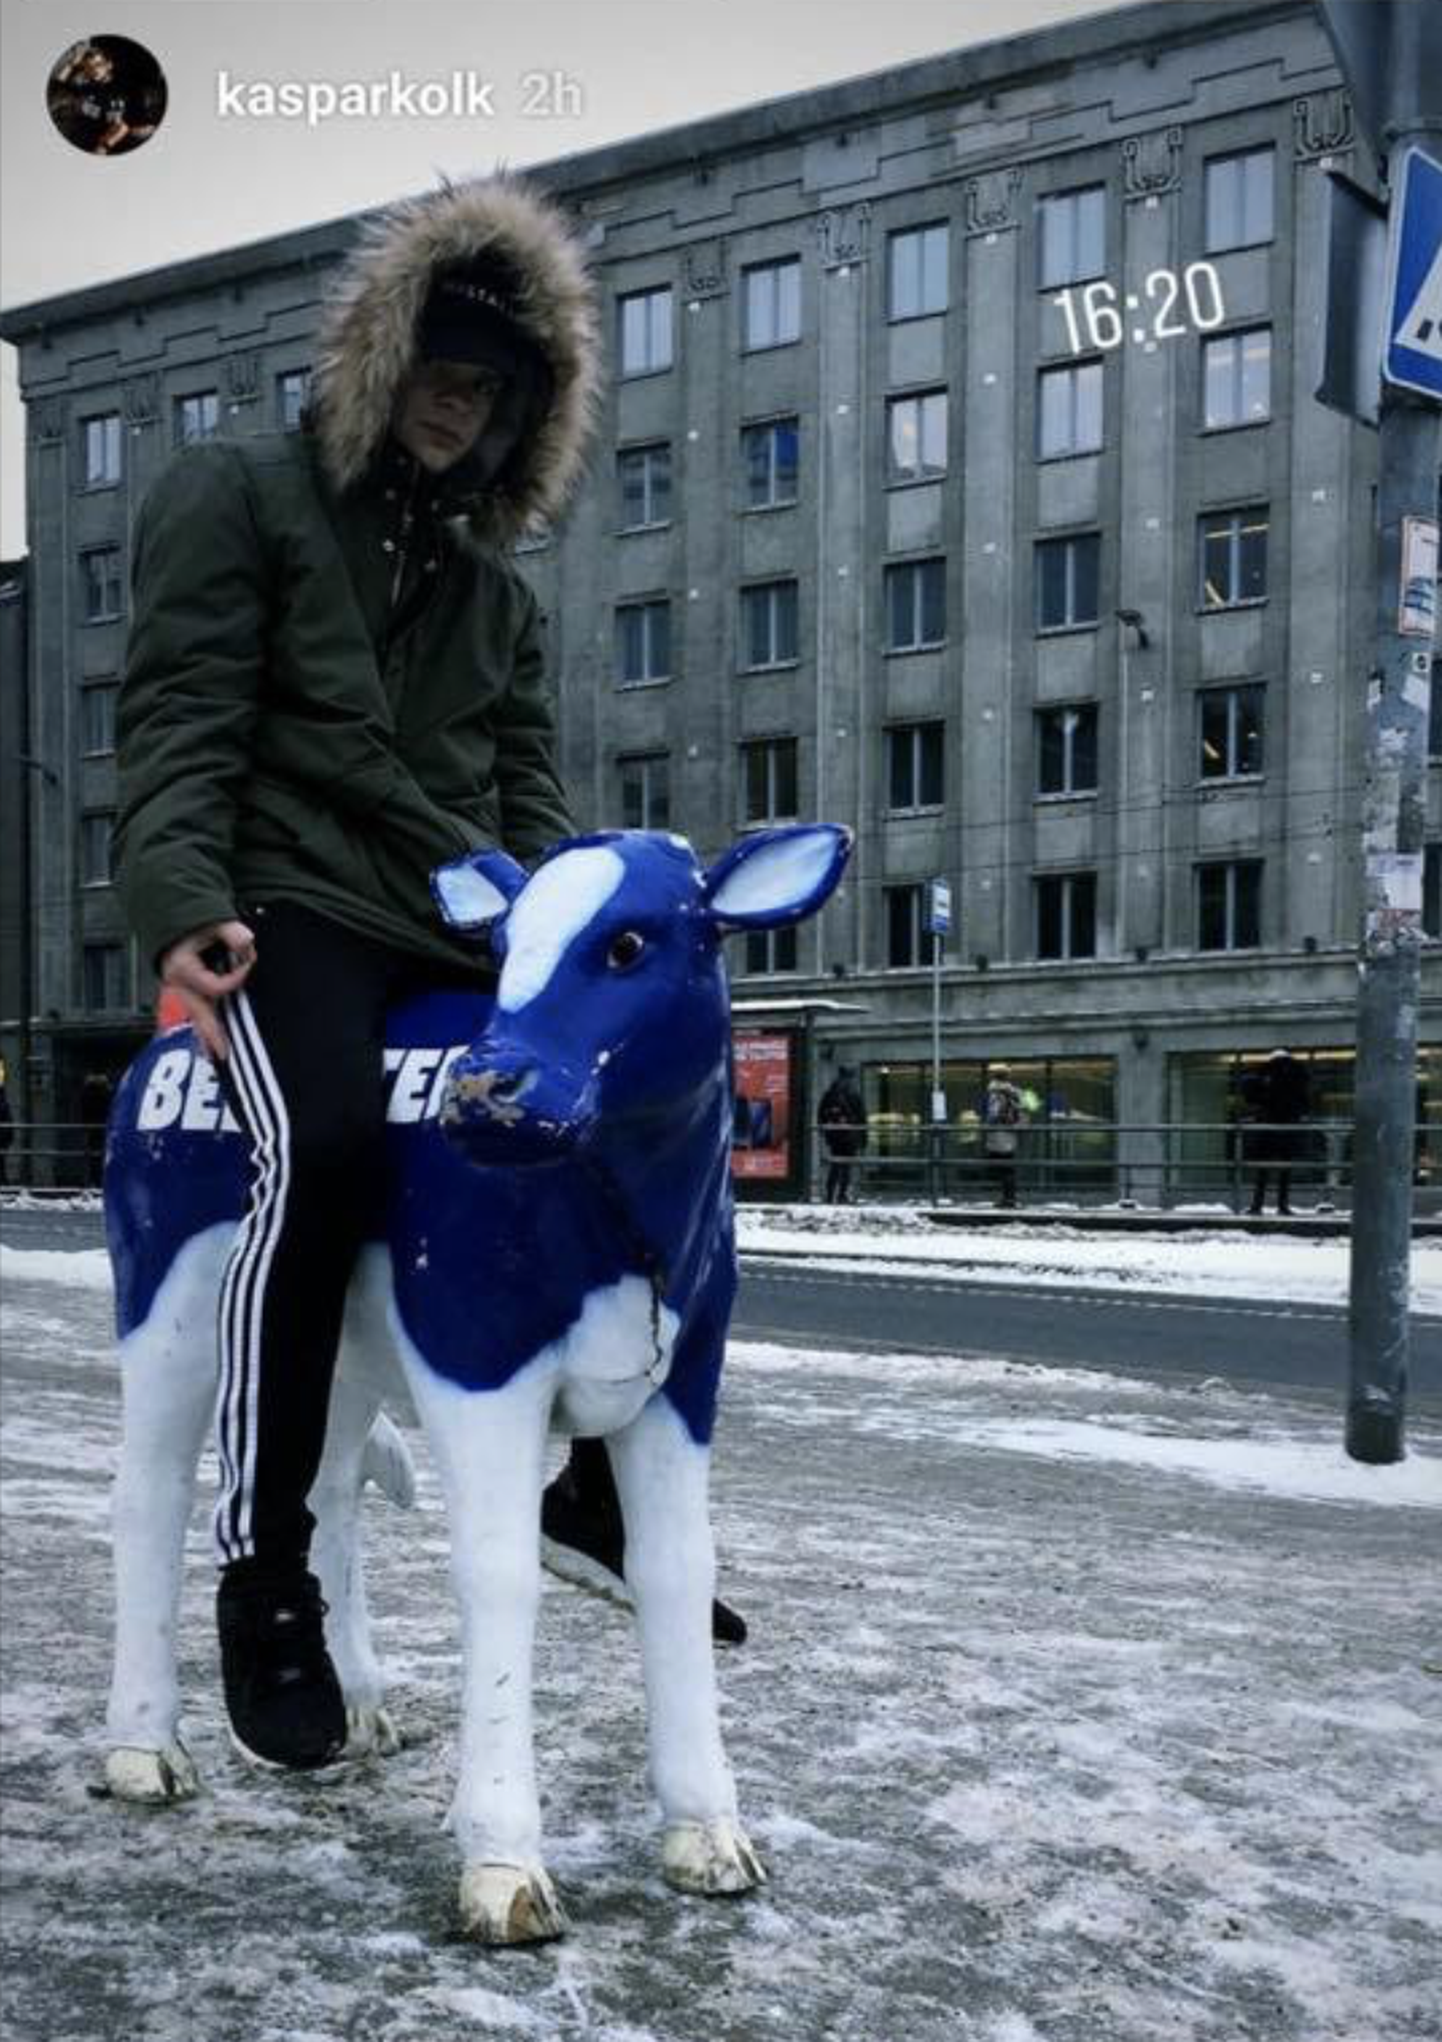 Kaspar Kolk varastatud lehma seljas